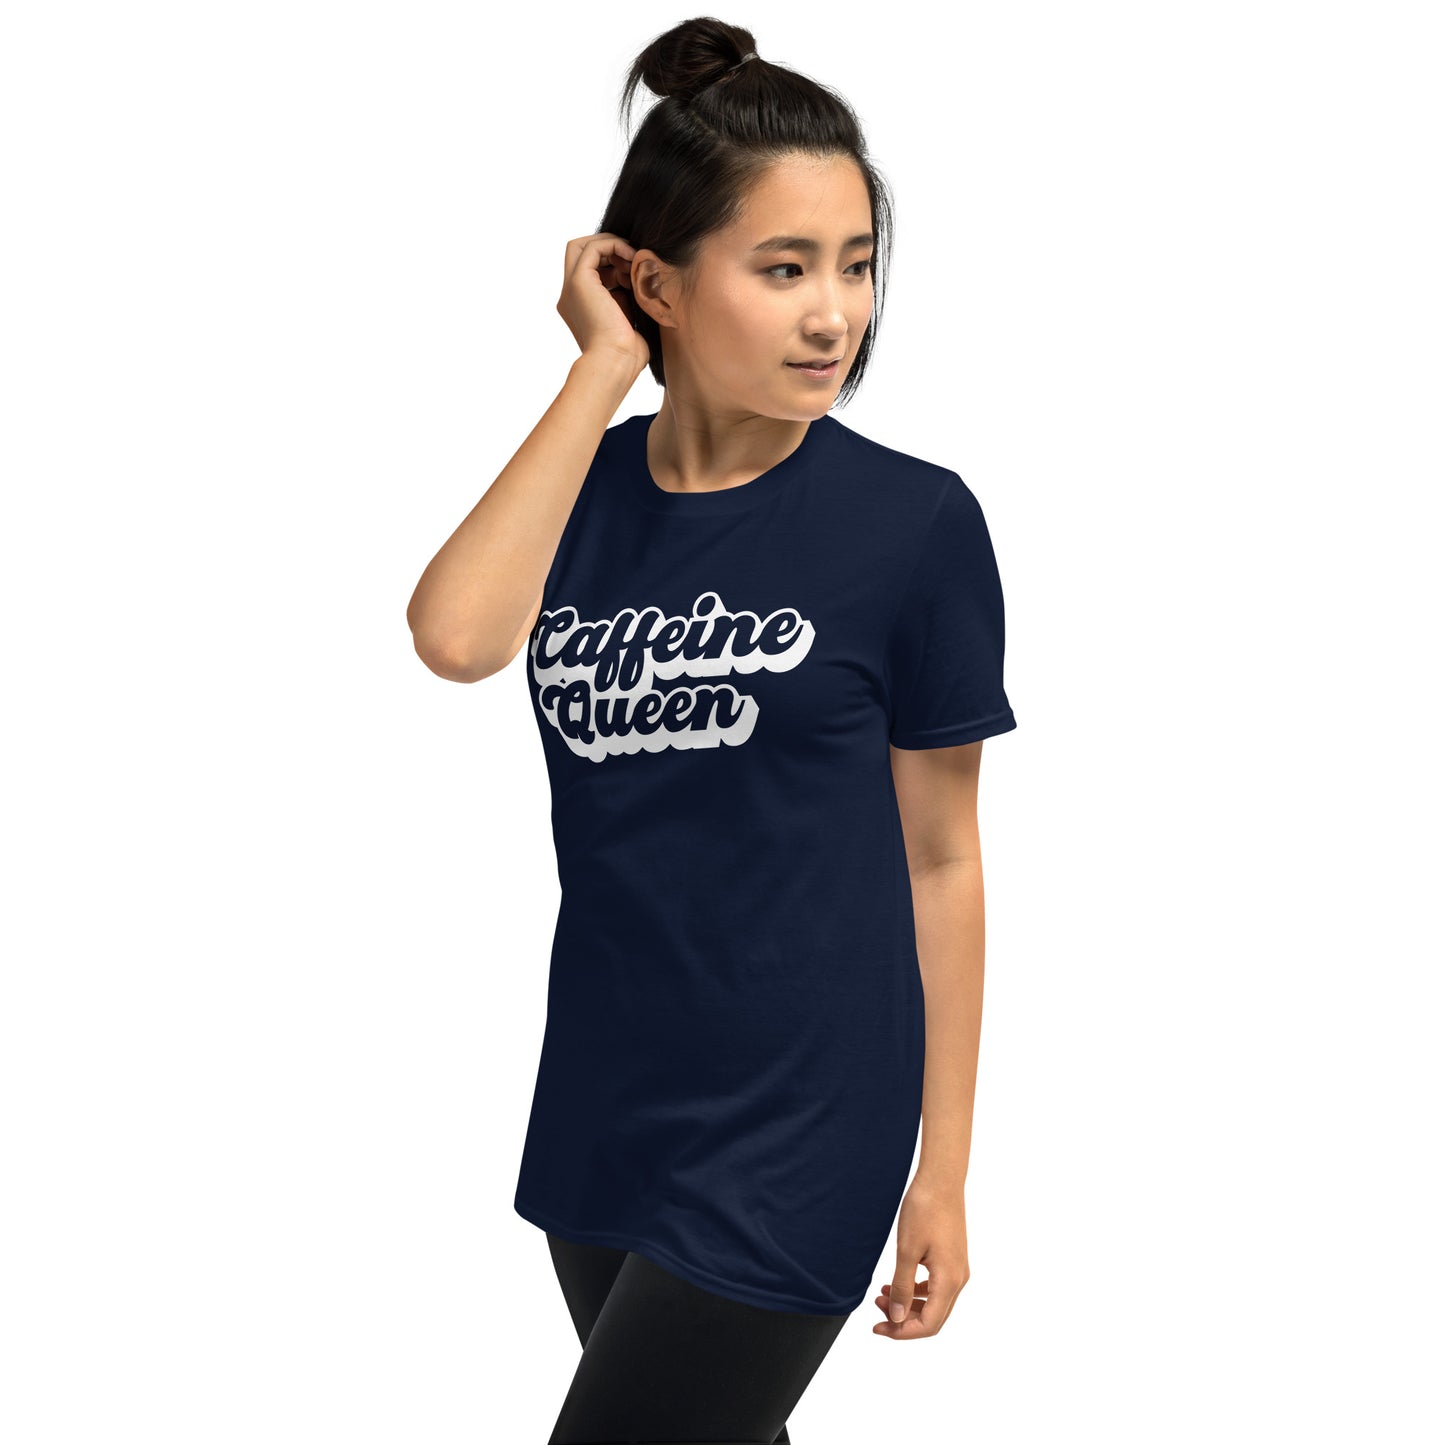 Caffeine Queen t- shirt | Mom Shirts